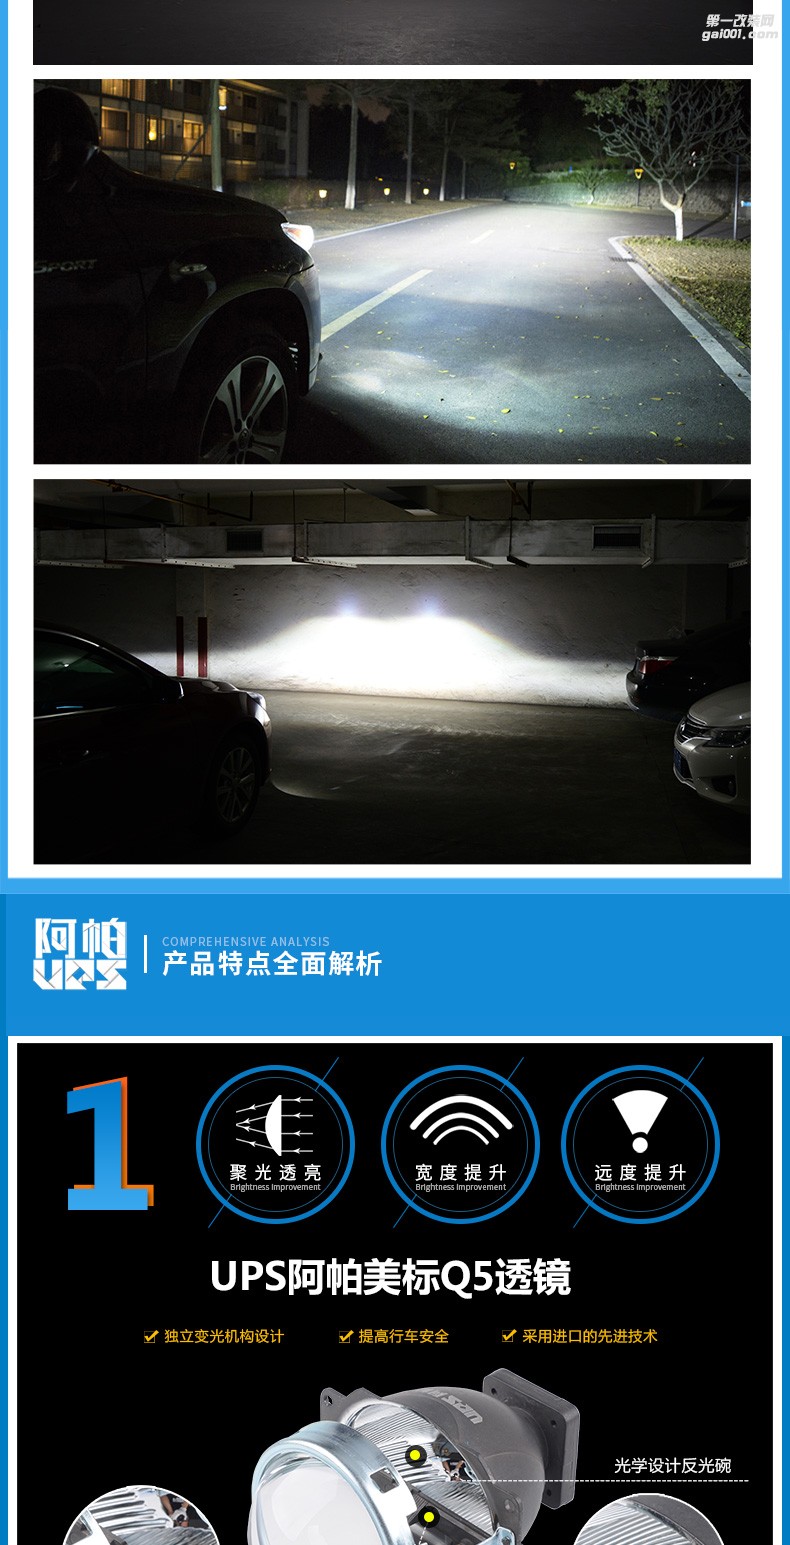 四川成都改装阿帕2A套装Q5透镜 氙气灯 快启安定器 LED日间行车灯 鑫帕实体店安装